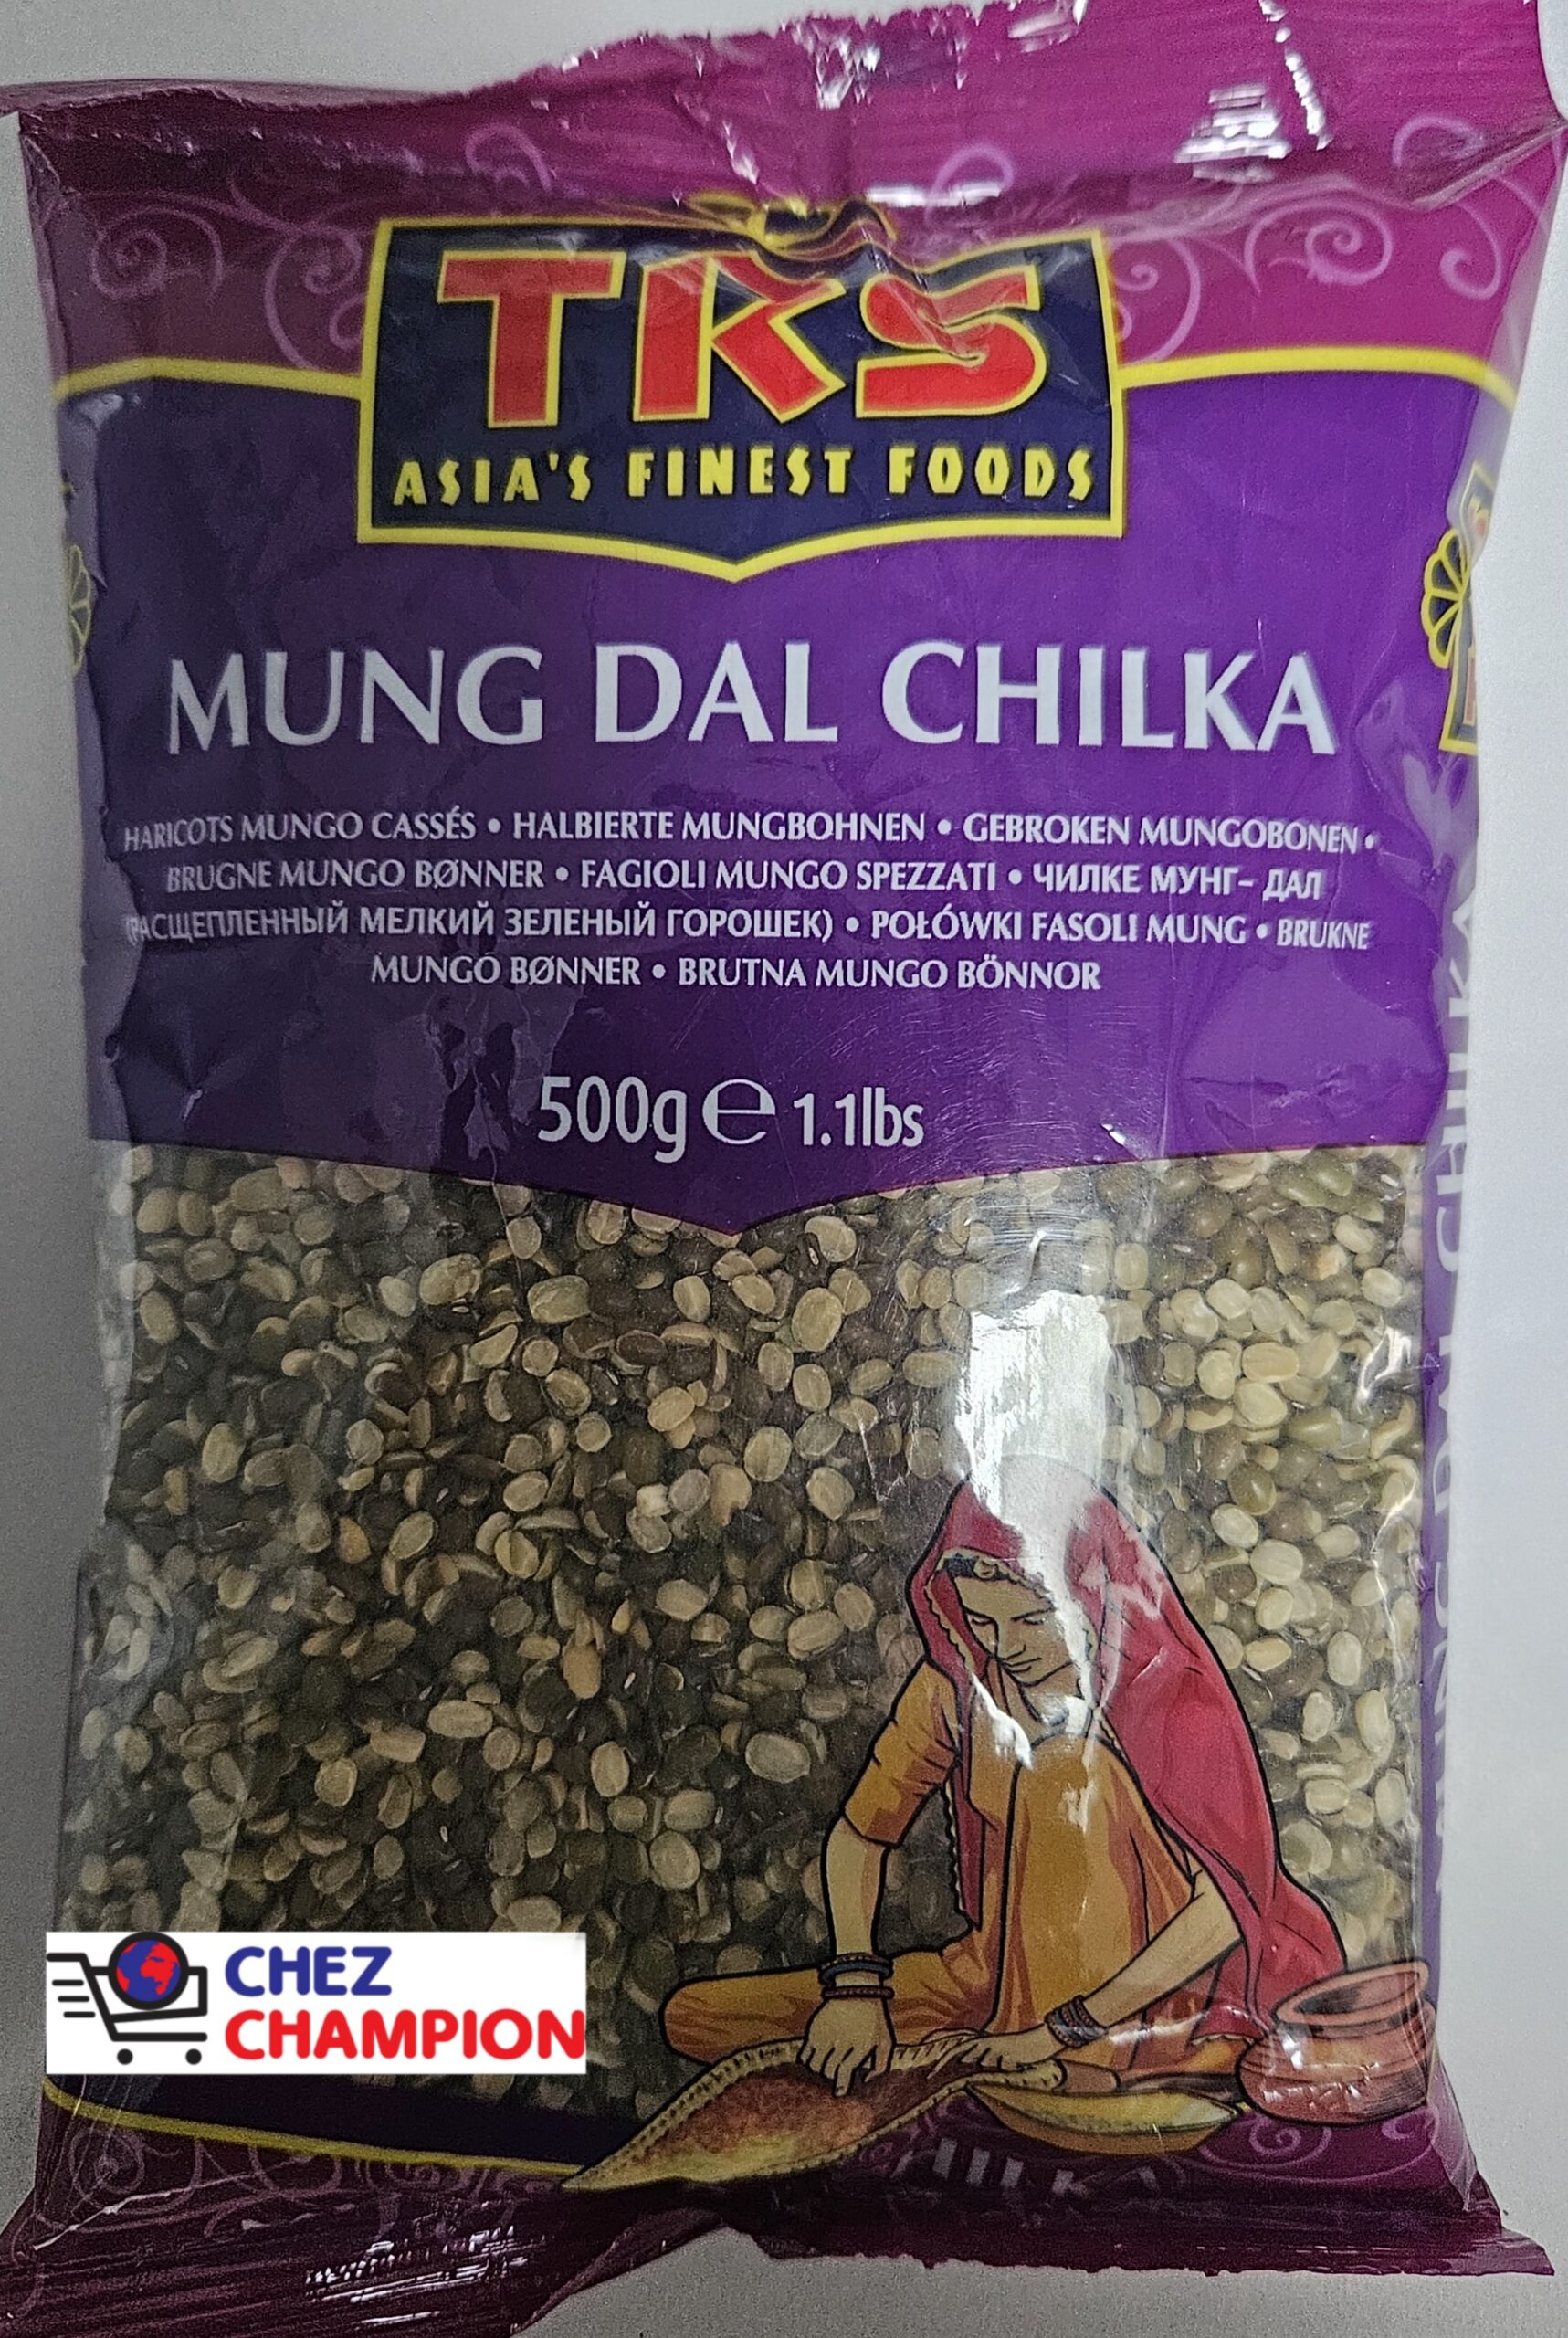 TRS mung dal chilka – haricots mungo cassés – halbierte mungbohnen -500g